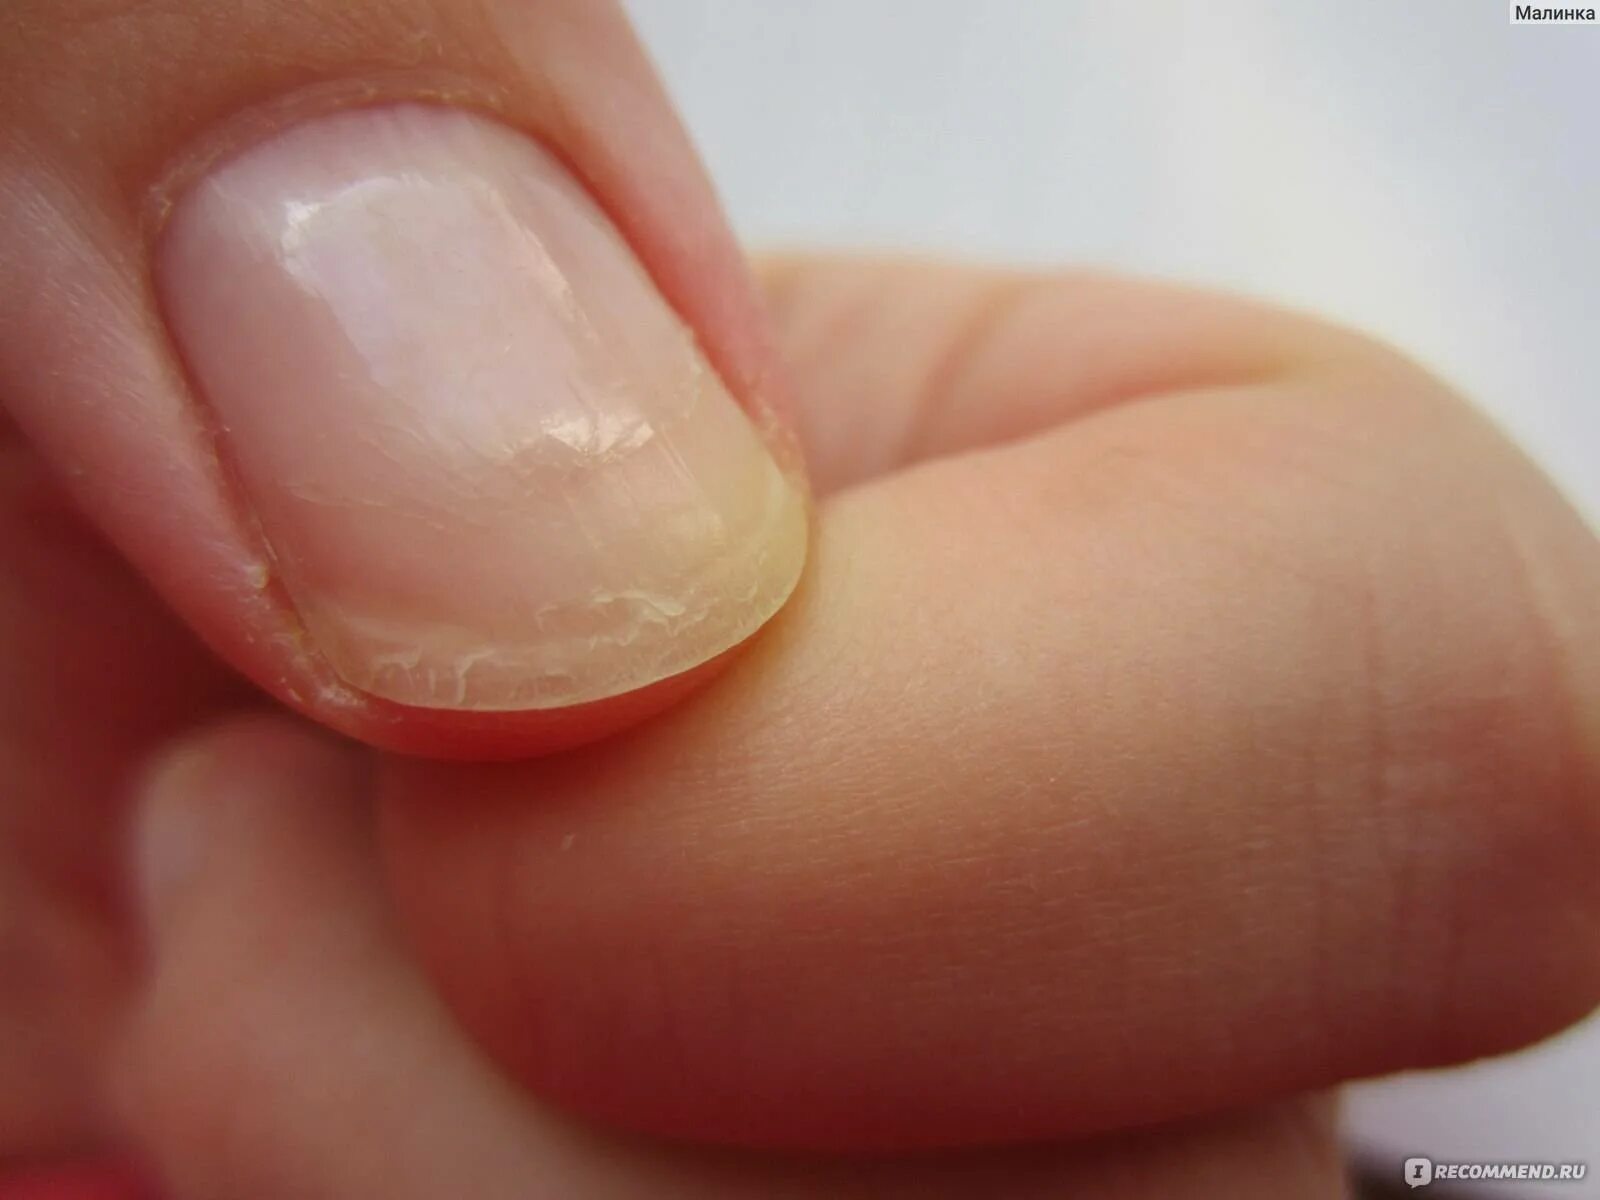 Ногти слоятся что делать в домашних. Онихошизис ногтевой пластины.